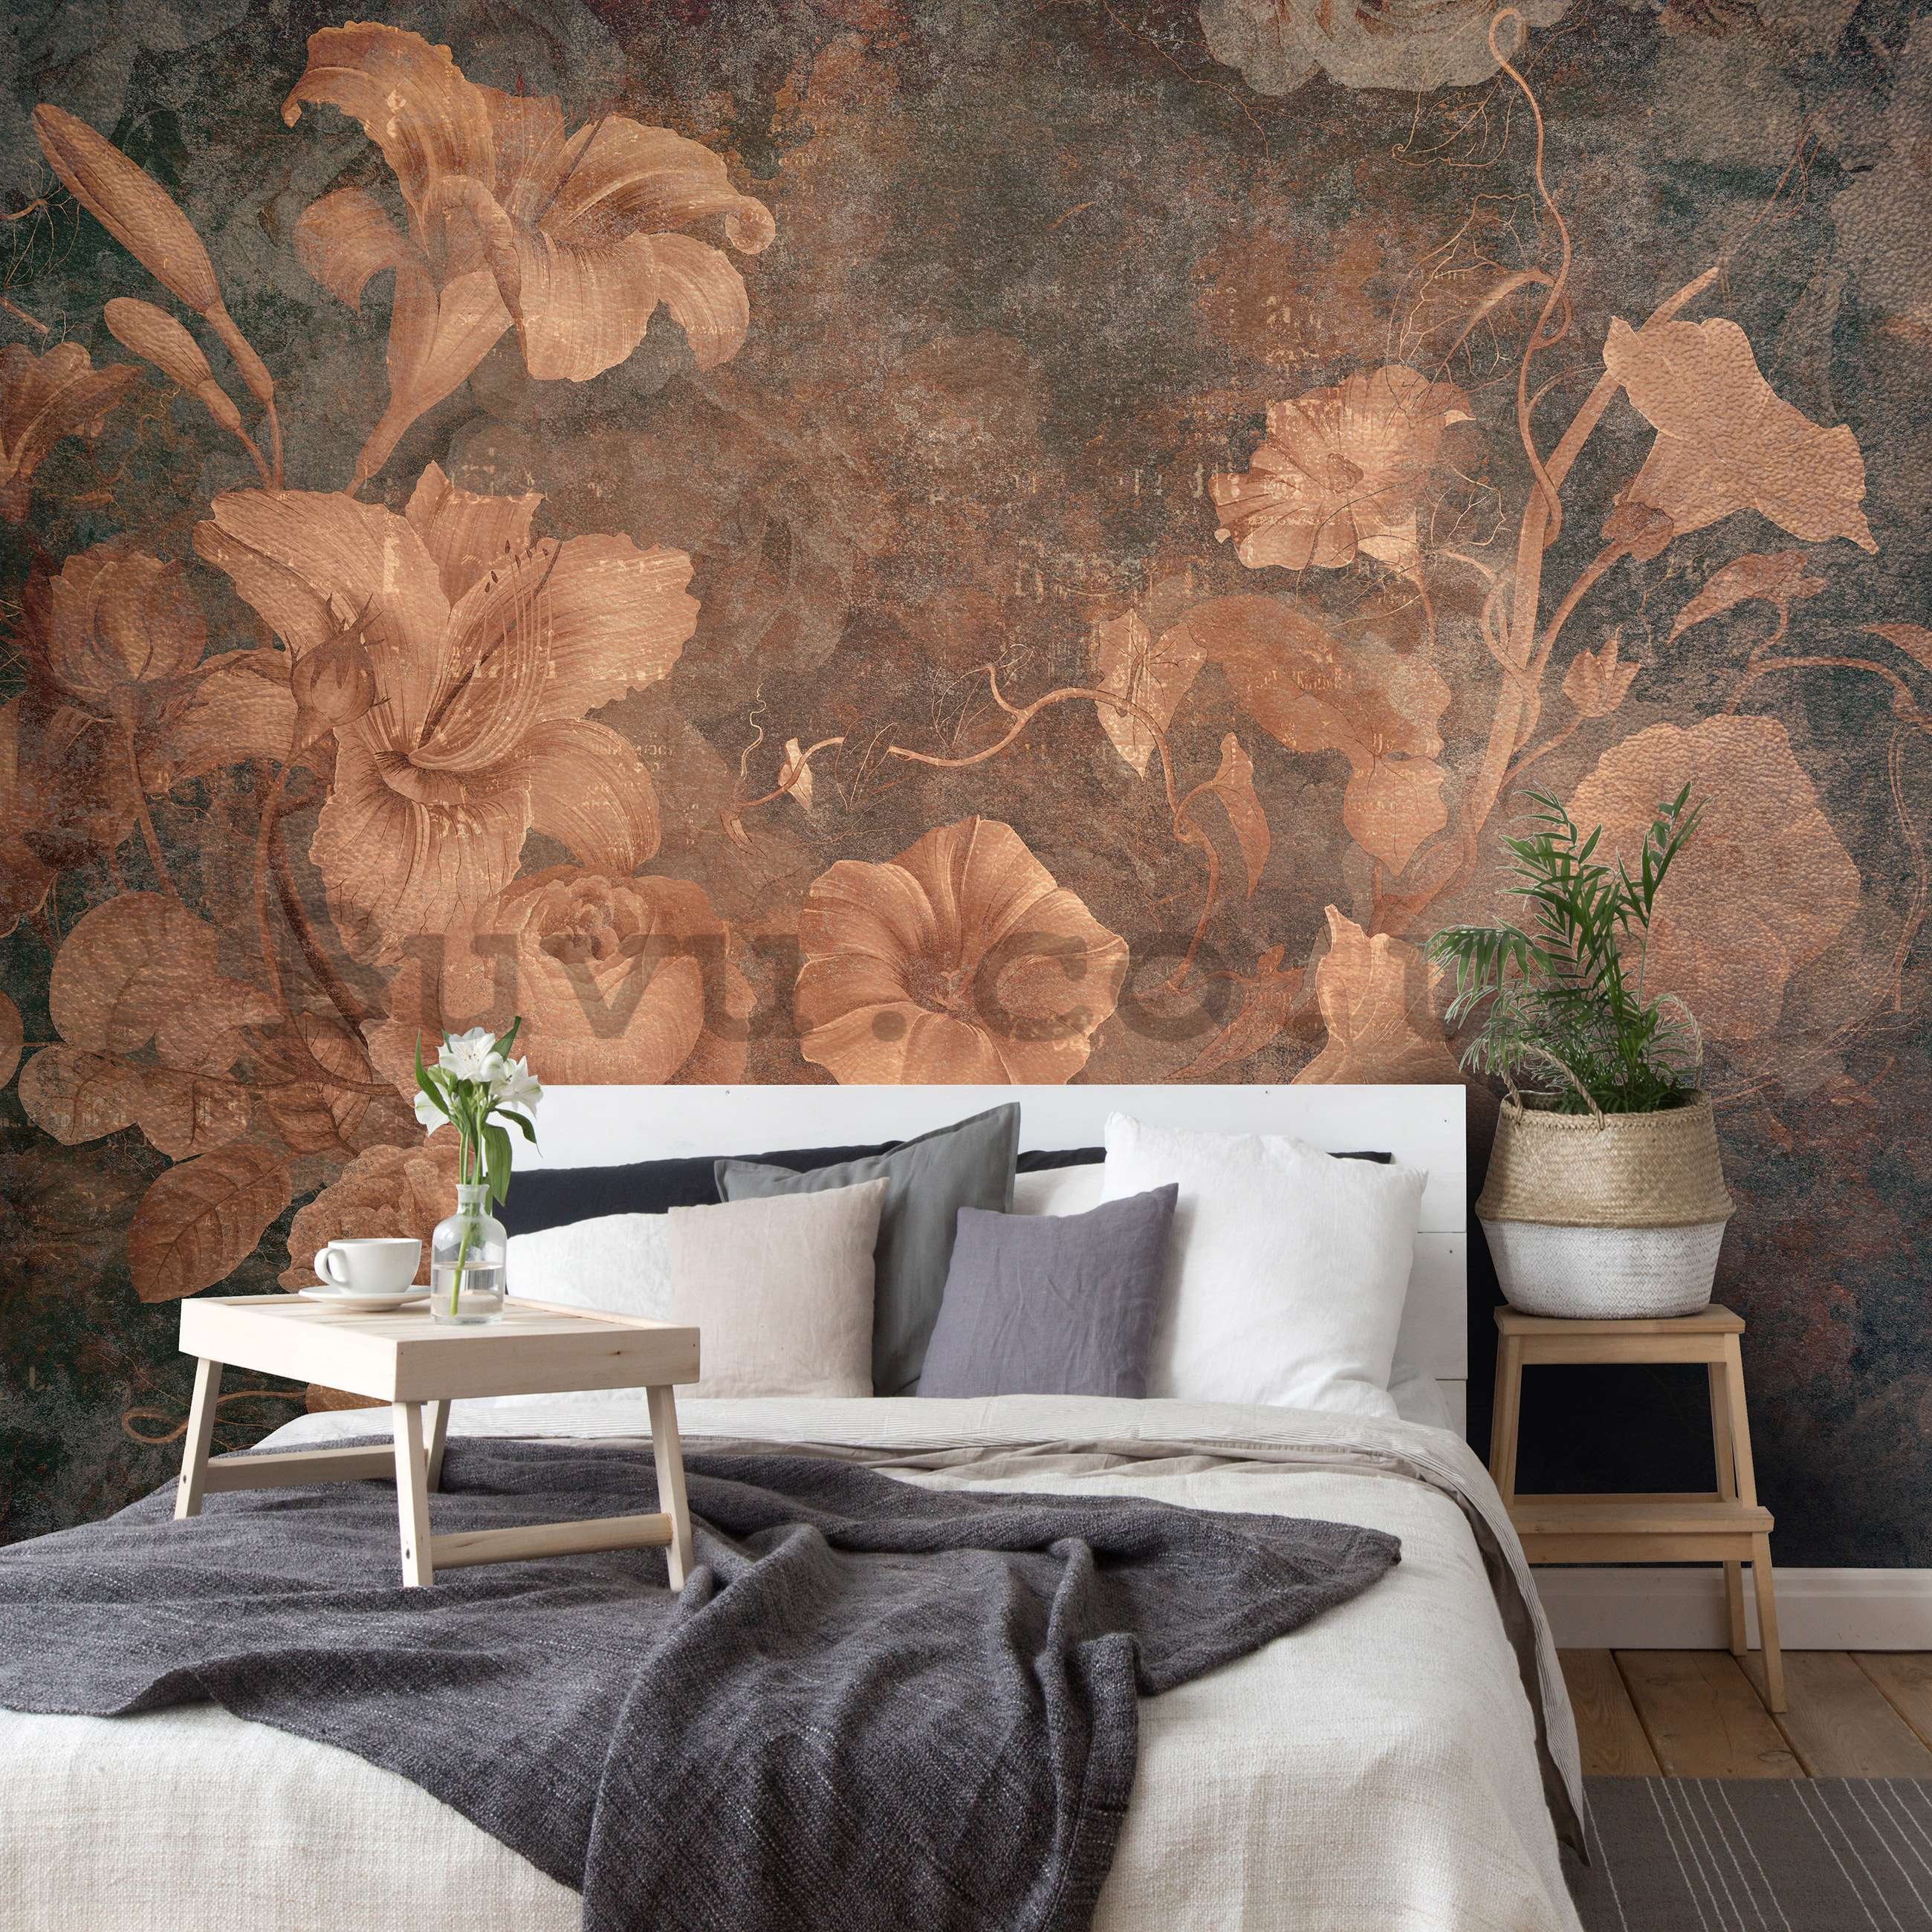 Wall mural vlies: Vintage imitation flowers - 254x184 cm